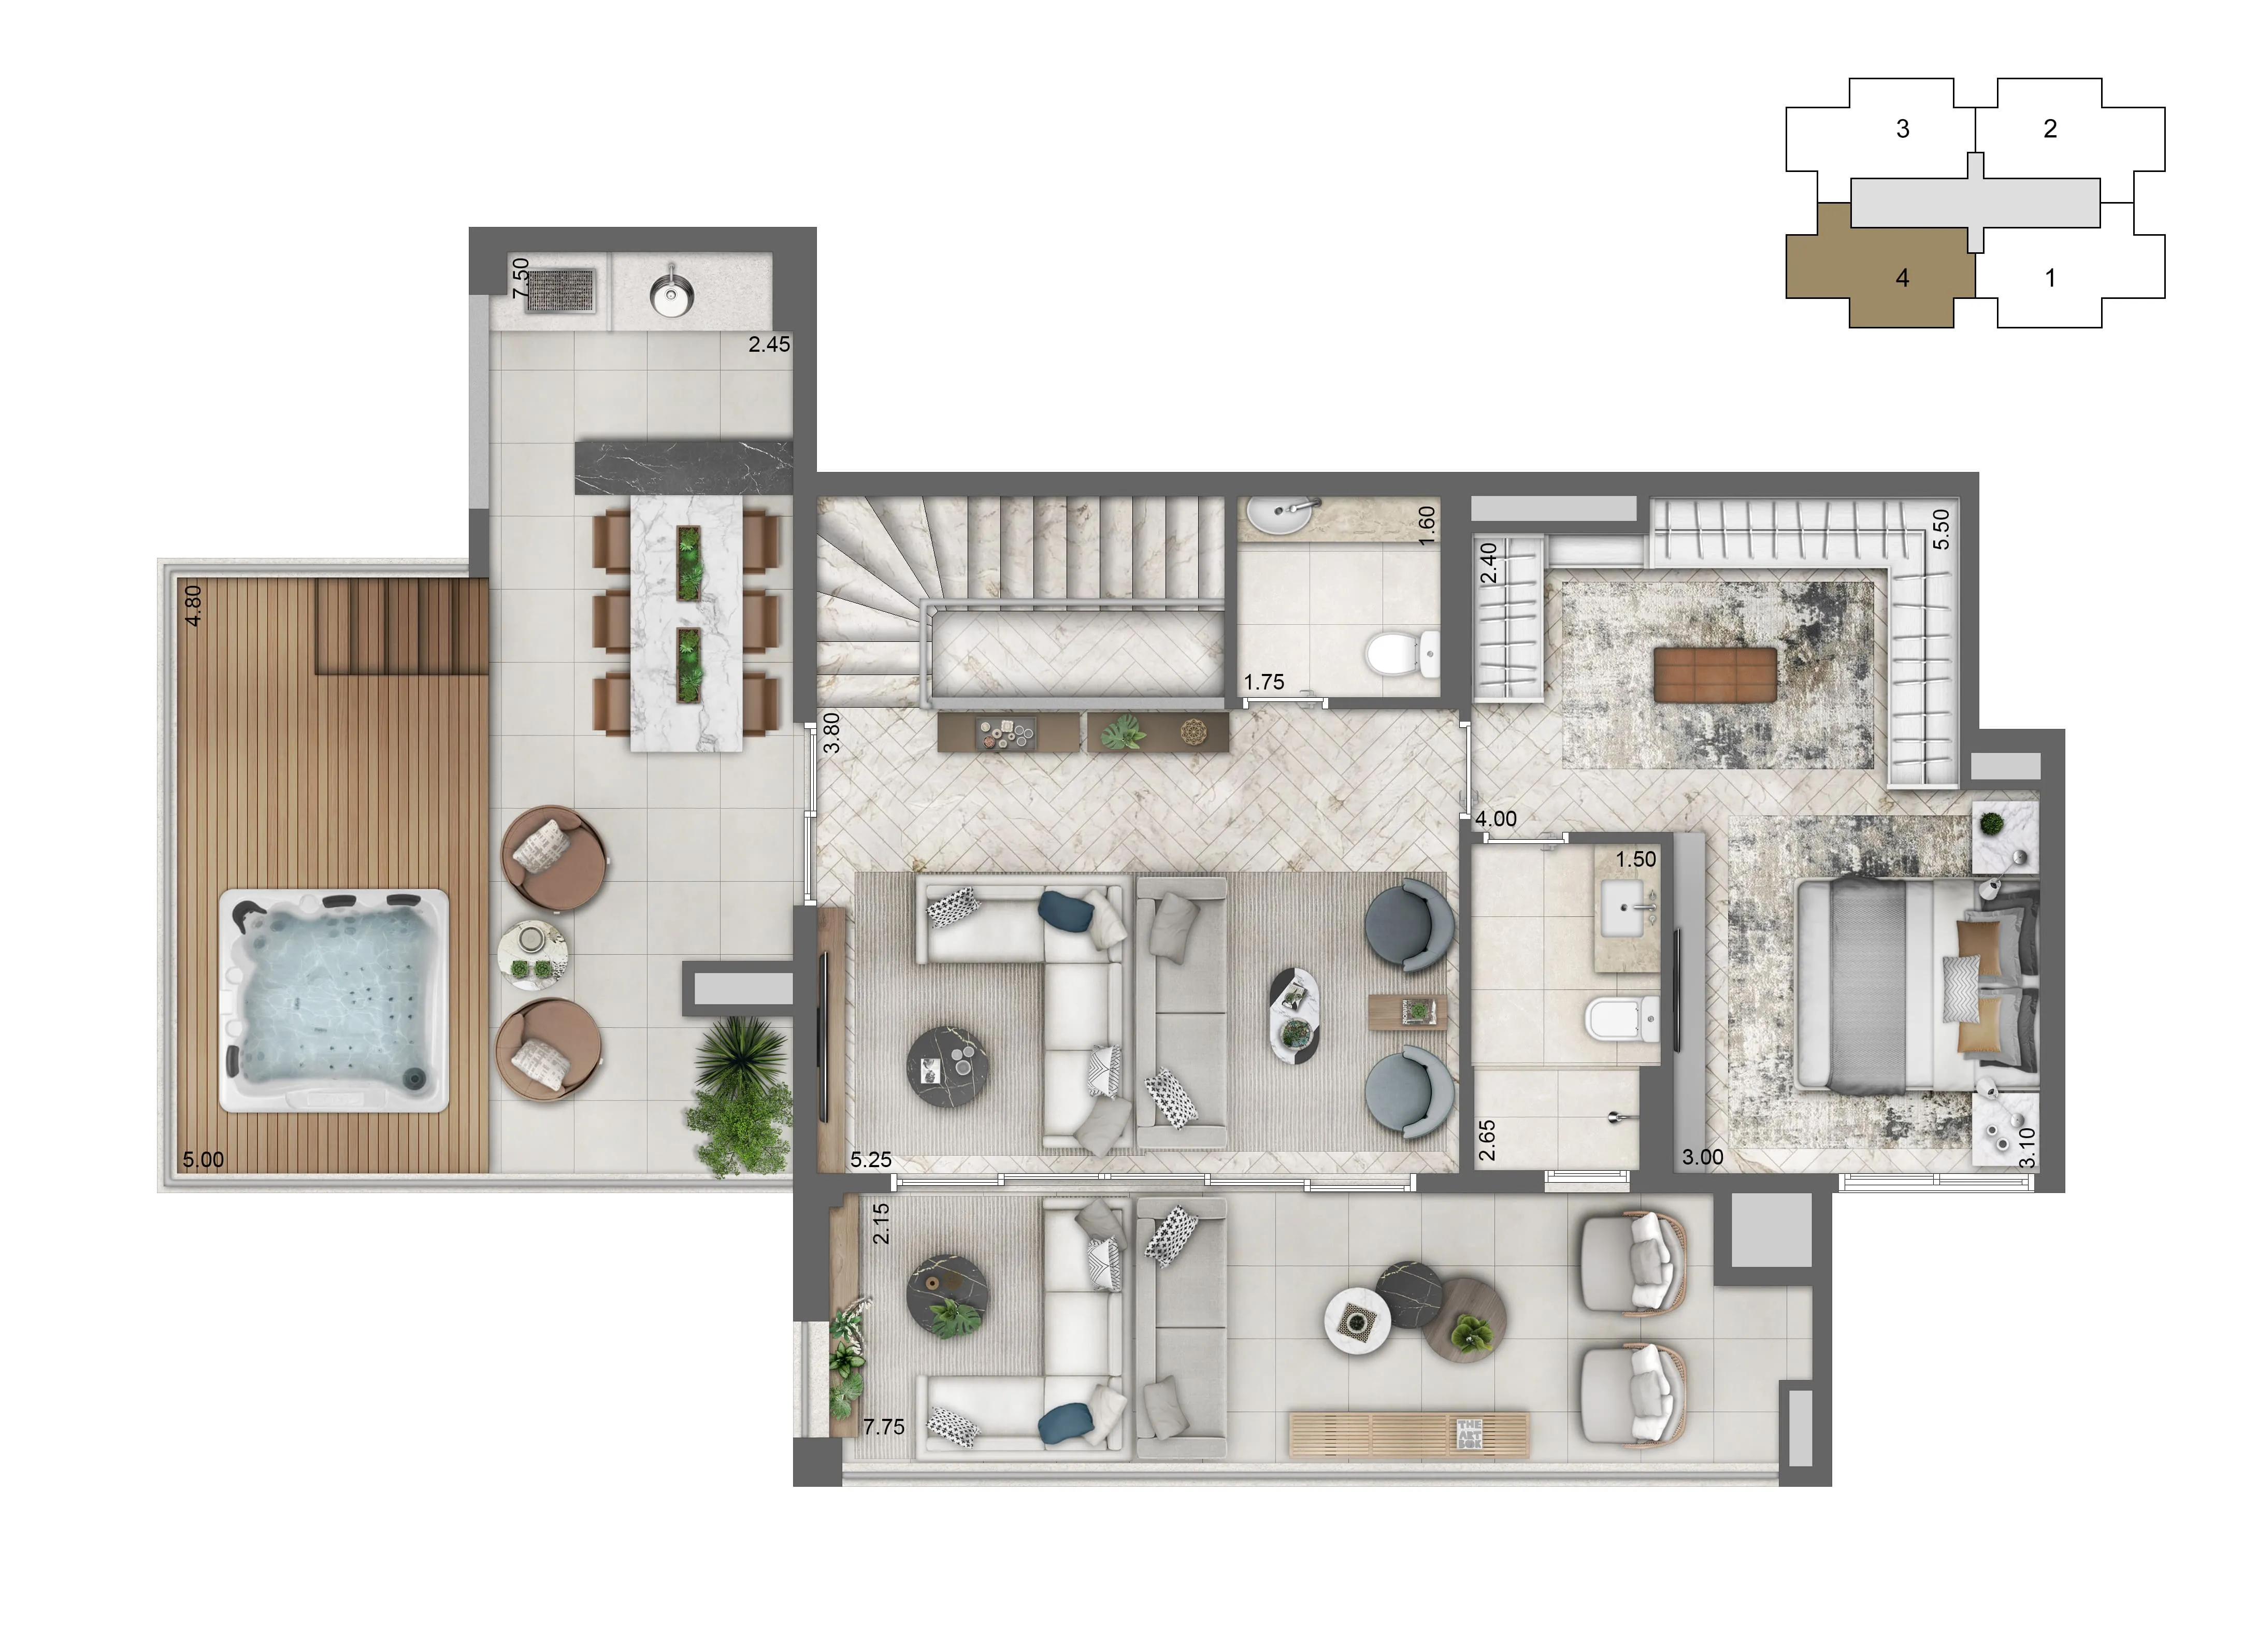 Planta Duplex Pavimento Superior 224 m² | 3 suites)